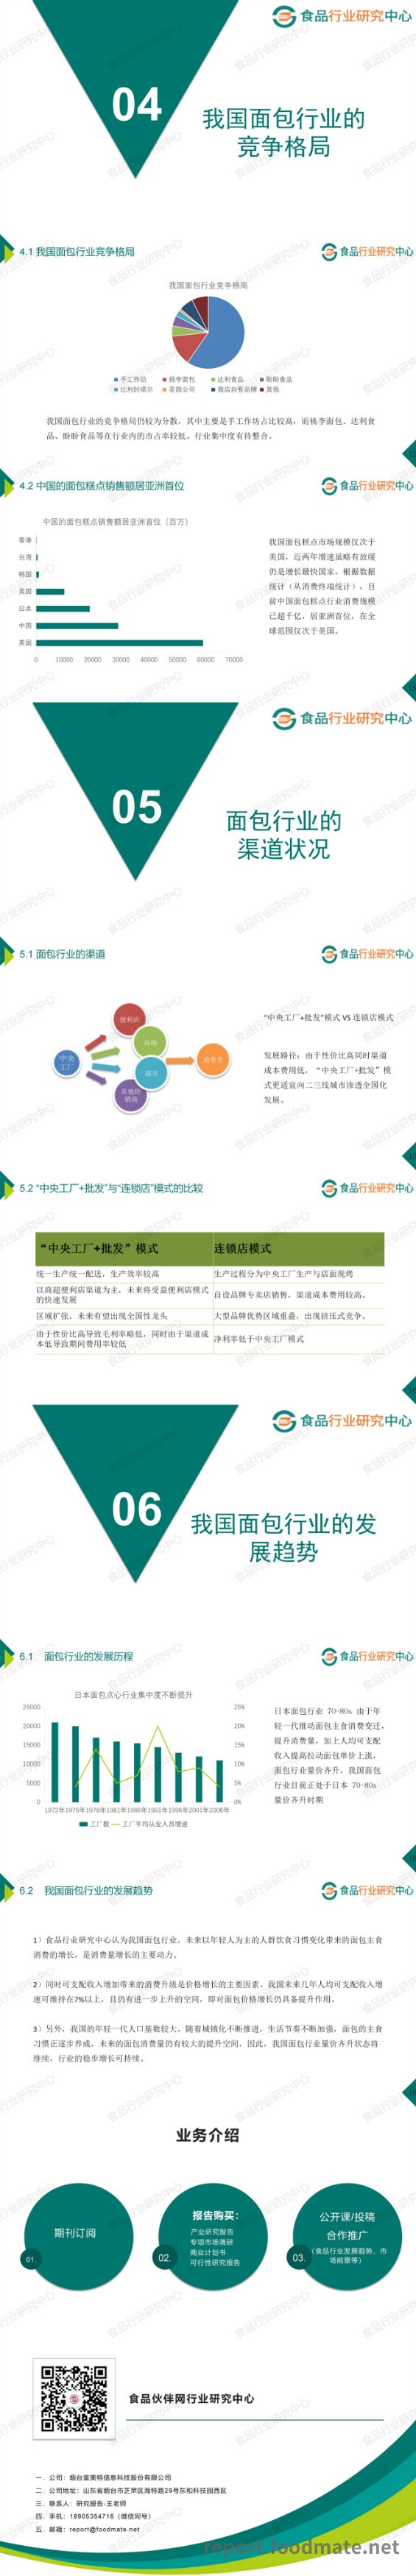 2020年中国面包行业市场研究与消费者洞察分析报告_meitu_2